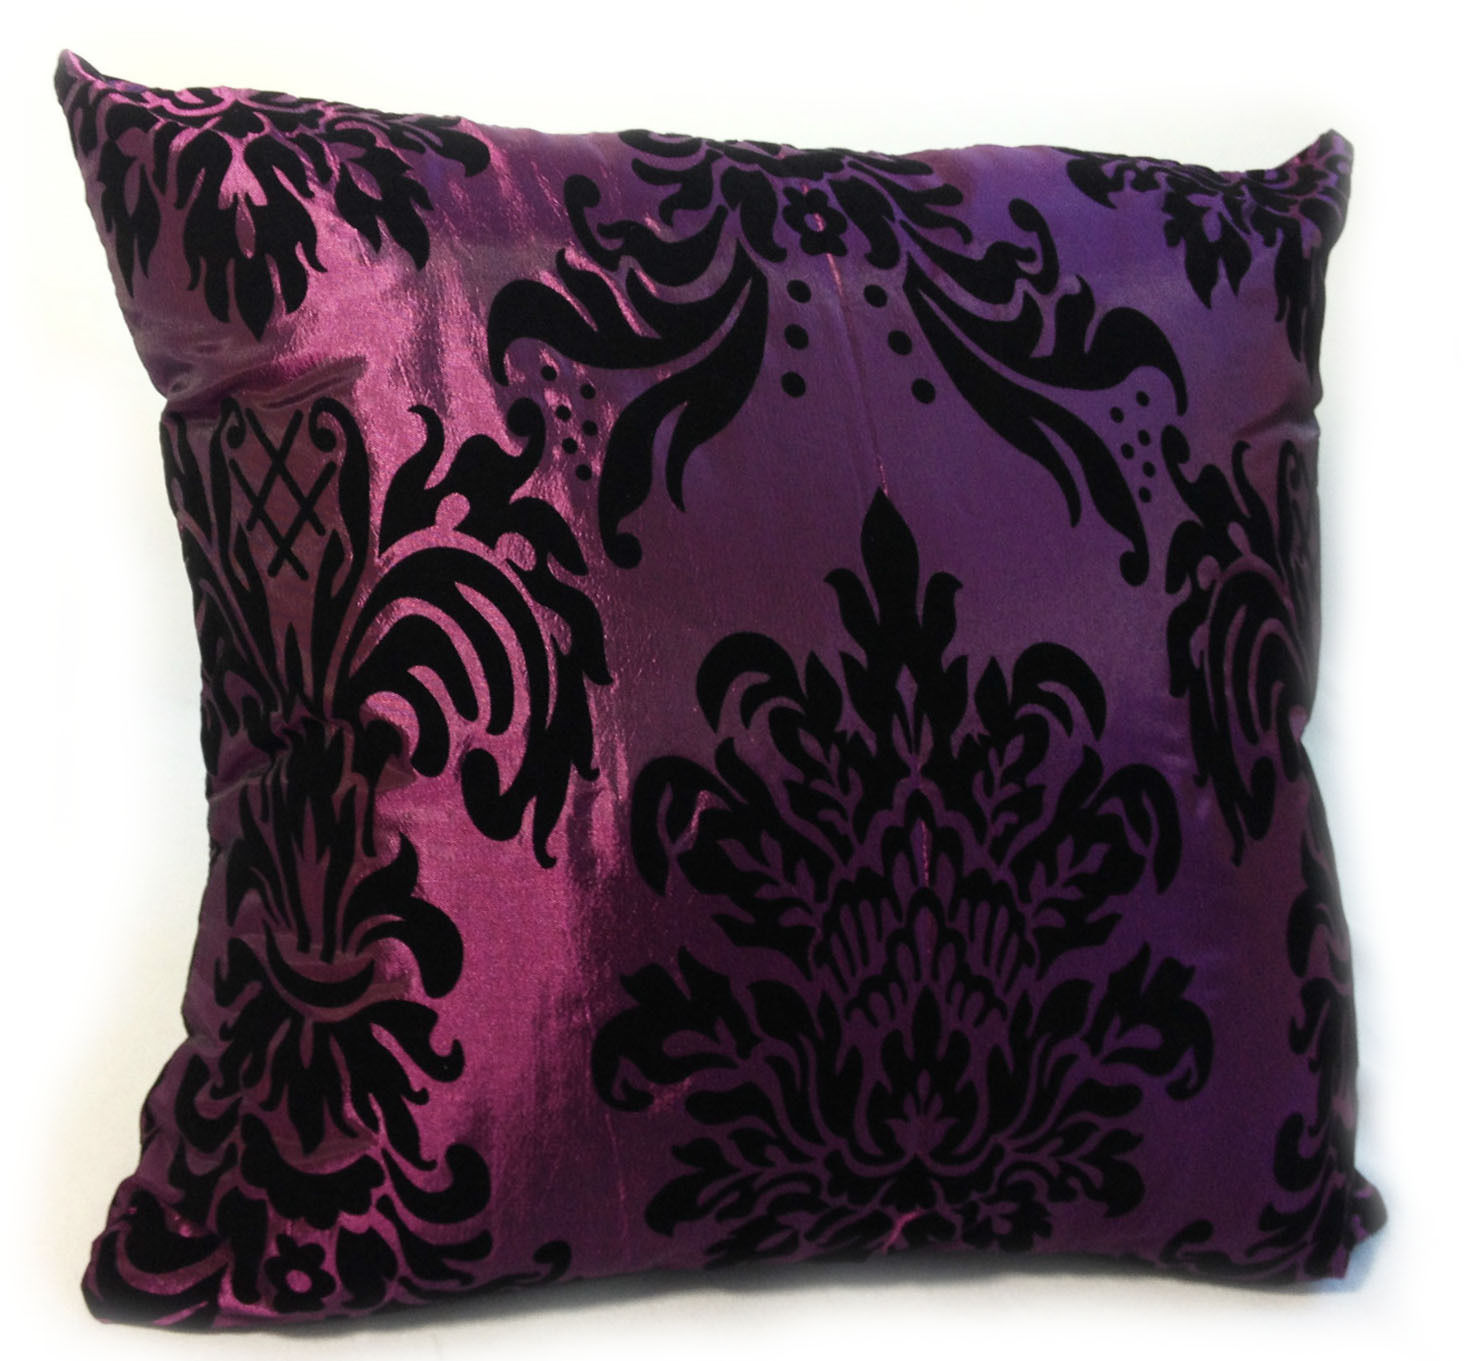 Dekorační polštářek Luxury povlak fialový